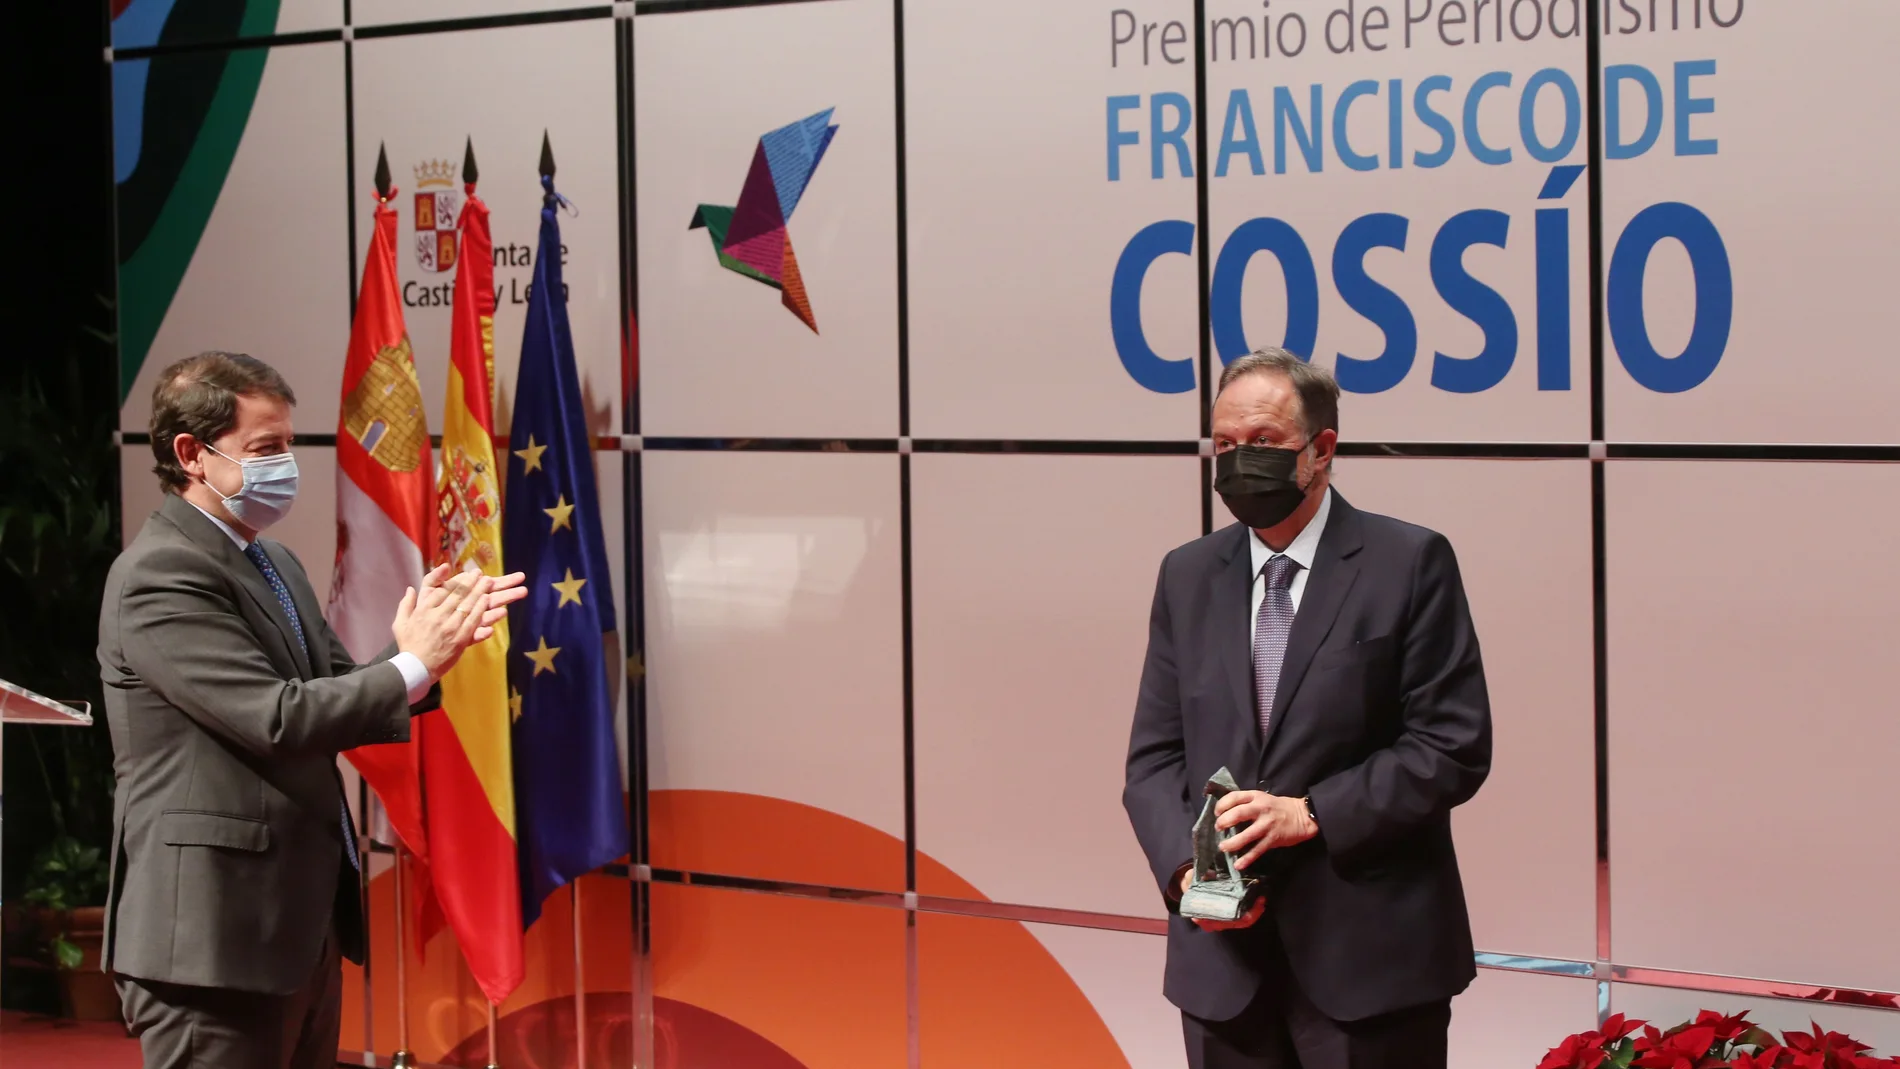 El periodista Ignacio Fernández Sobrino recibe el galardón Francisco de Cossío a la Trayectoria Profesional de menos del presidente de la Junta, Alfonso Fernández Mañueco